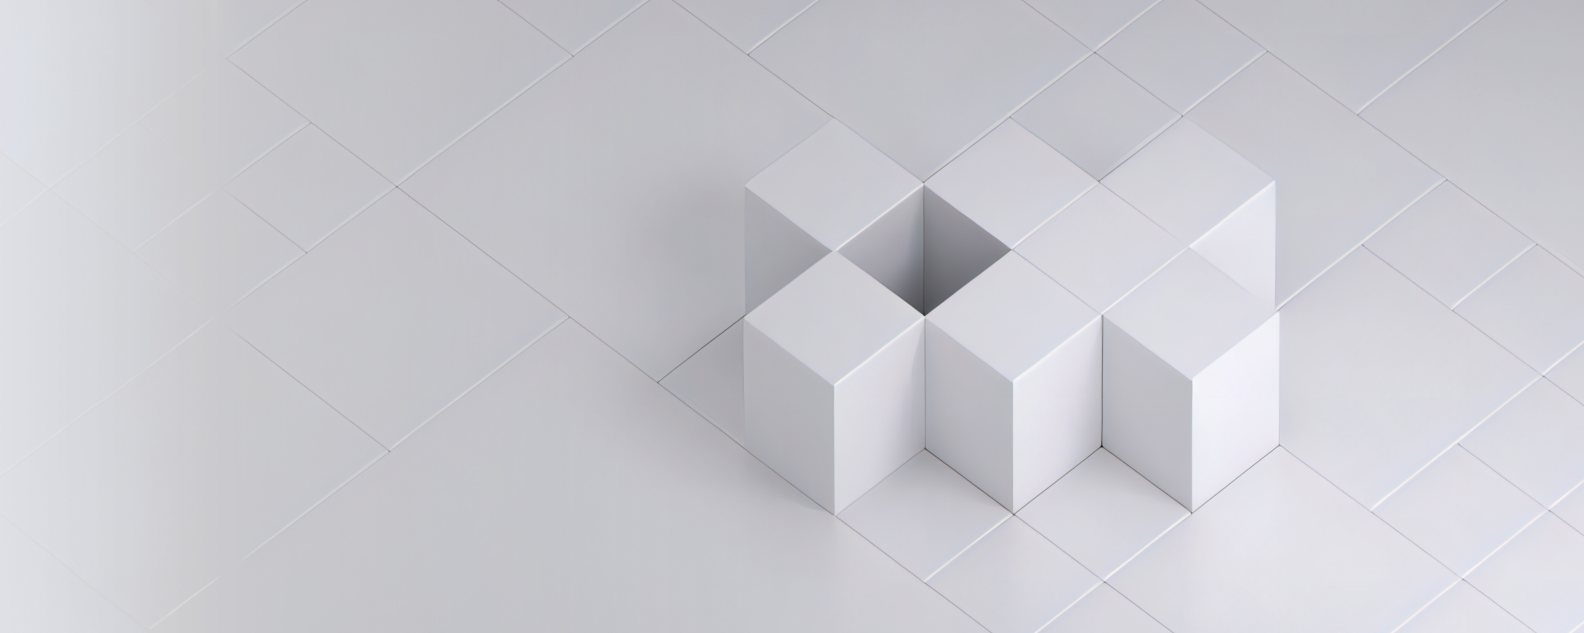 Imagen o fotografía realista de siete cubos blancos dispuestos en una cuadrícula blanca creando un patrón